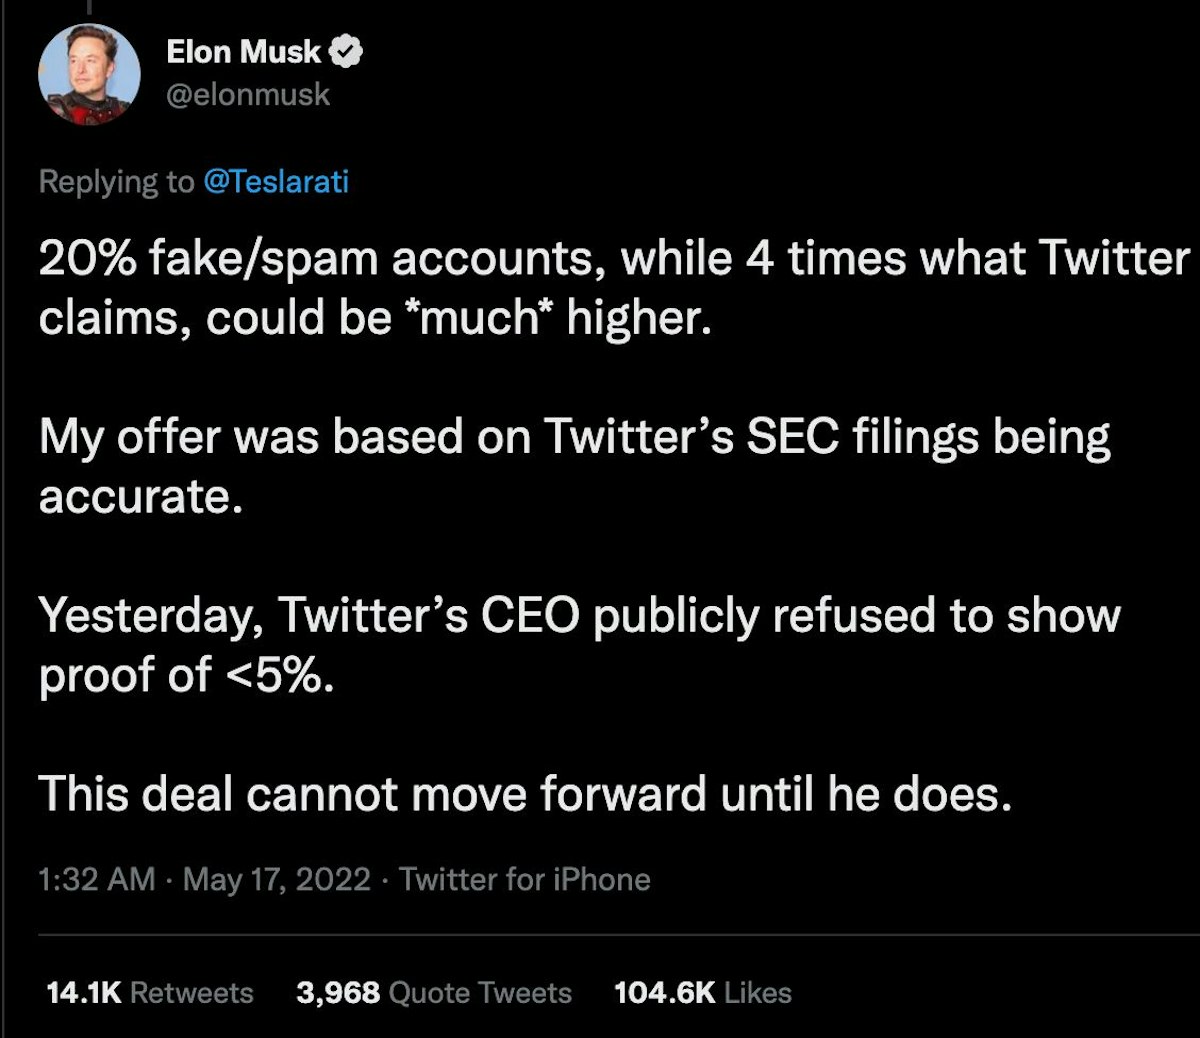 featured image - Musk công khai tuyên bố hồ sơ SEC của Twitter không chính xác, trong khi không thể cung cấp bằng chứng trước tòa